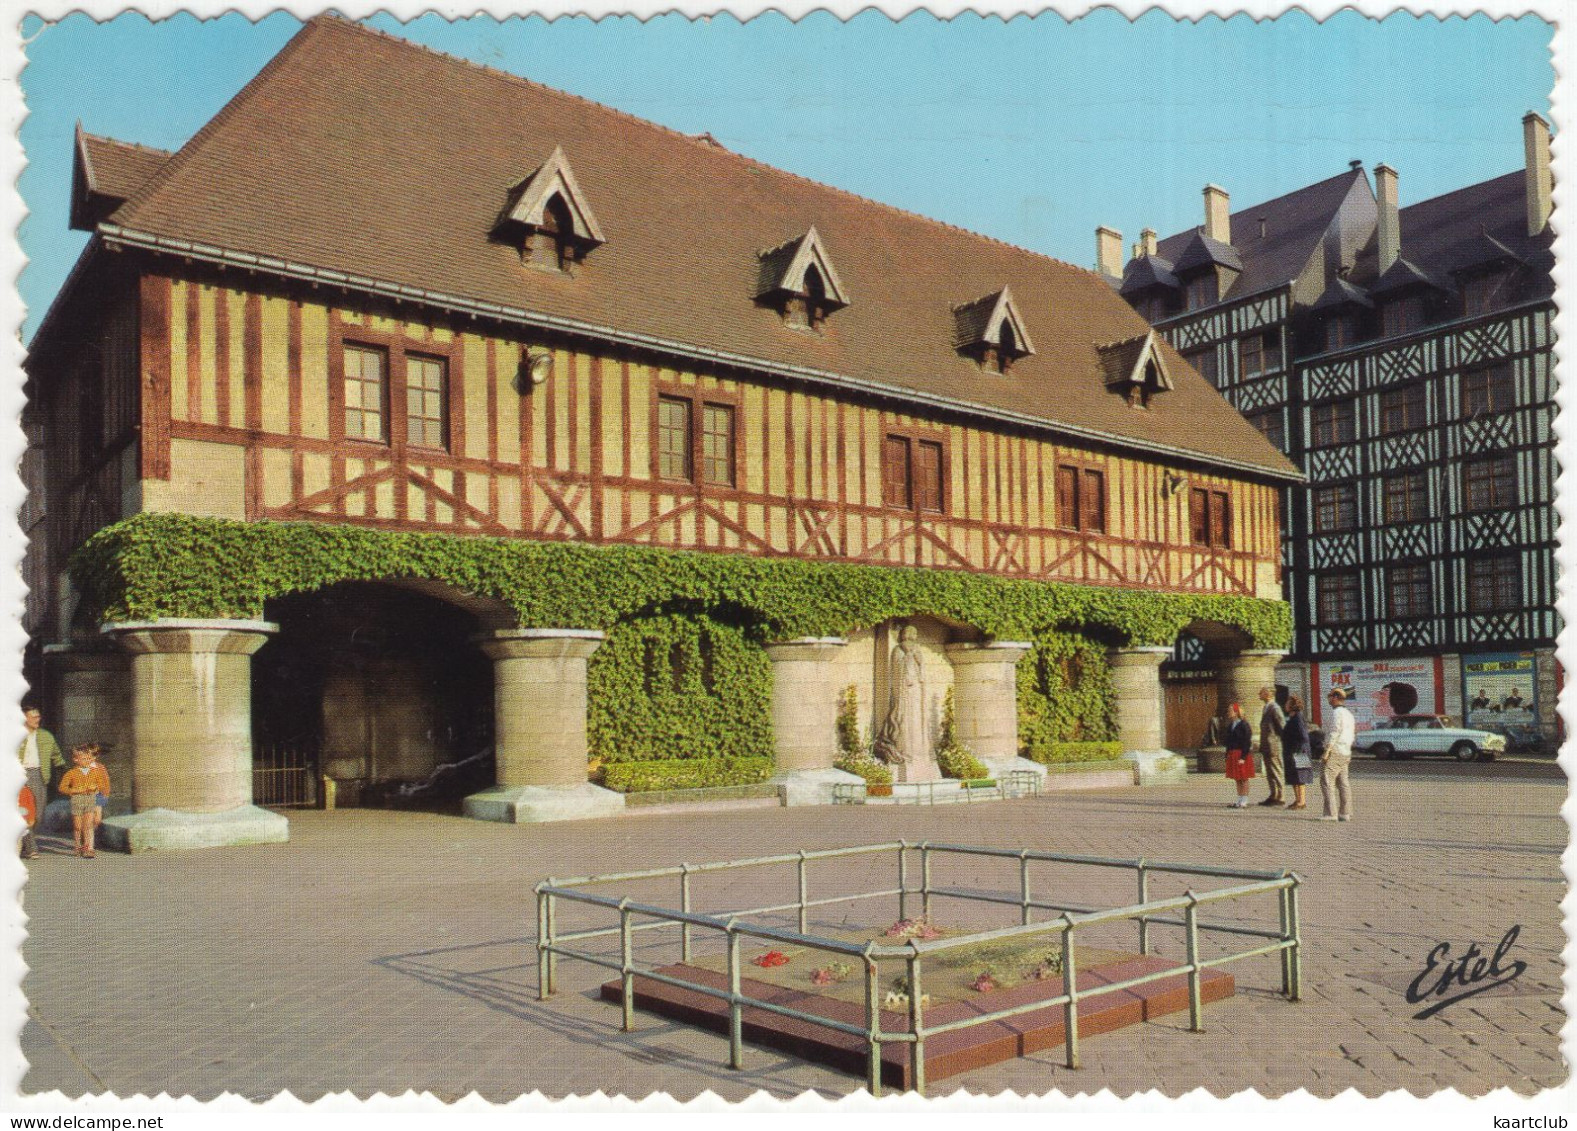 Rouen: SIMCA ARONDE P60 MONACO - La Place Du Marché, Statue Jeanne D'Arc - (France) - 1966 - Toerisme